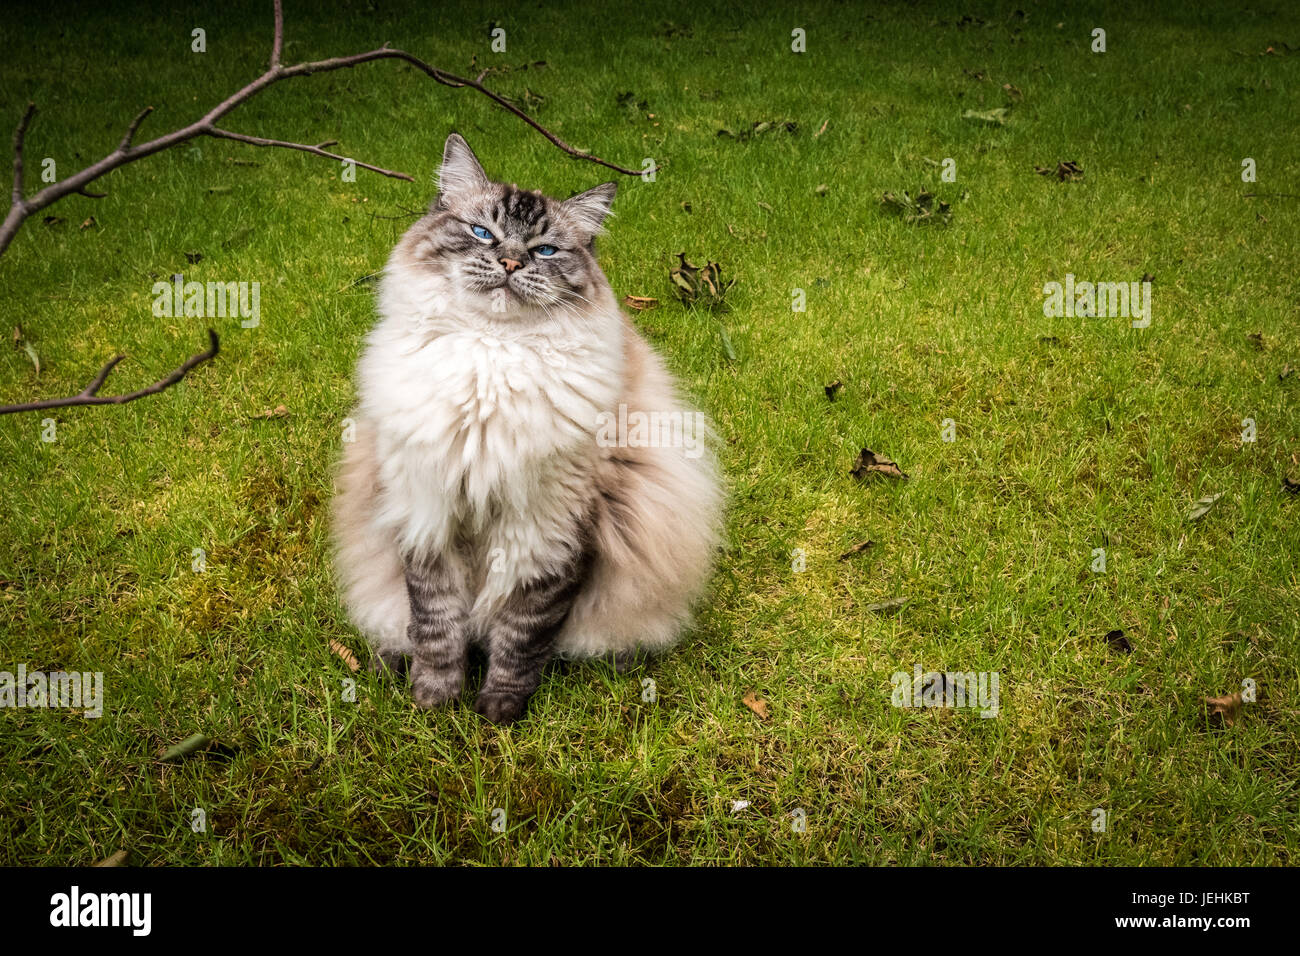 Sorridenti Pedigree Ragdoll (Seal Lynx Mitted Tabby) Cat seduti all'aperto su un prato guardando la telecamera. Foto Stock